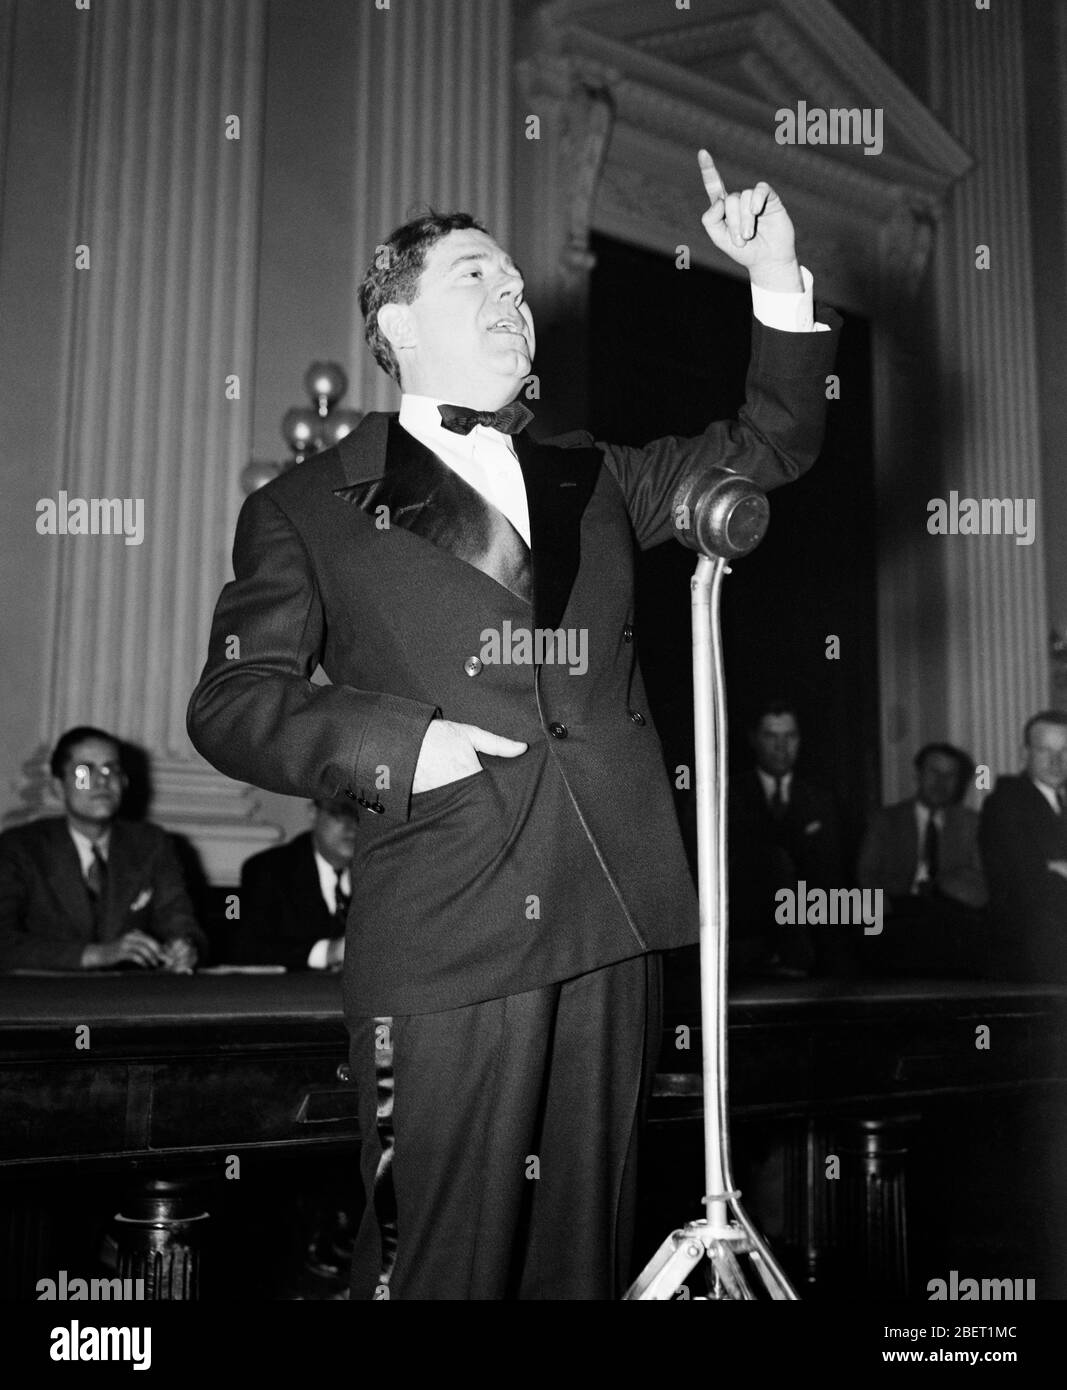 Senator Huey P. Long in a tuxedo giving a speech in 1935. Stock Photo